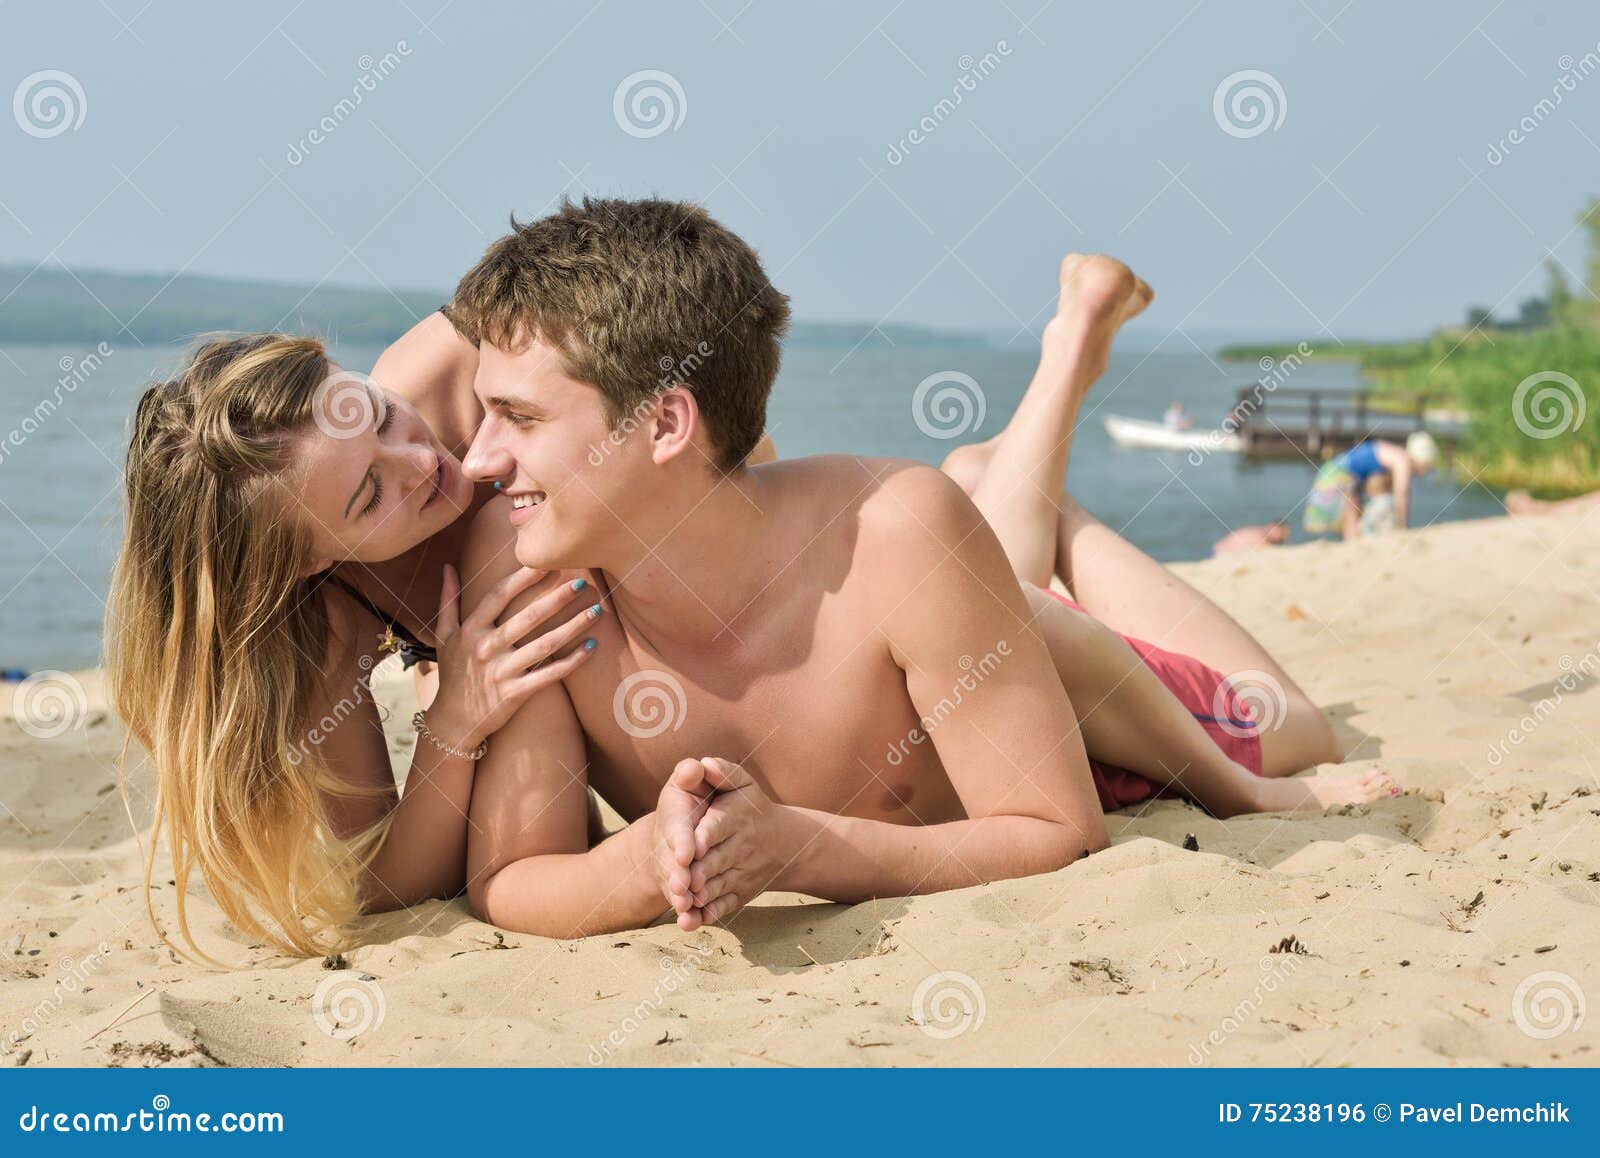 мужчины и женщины голом пляже фото 80